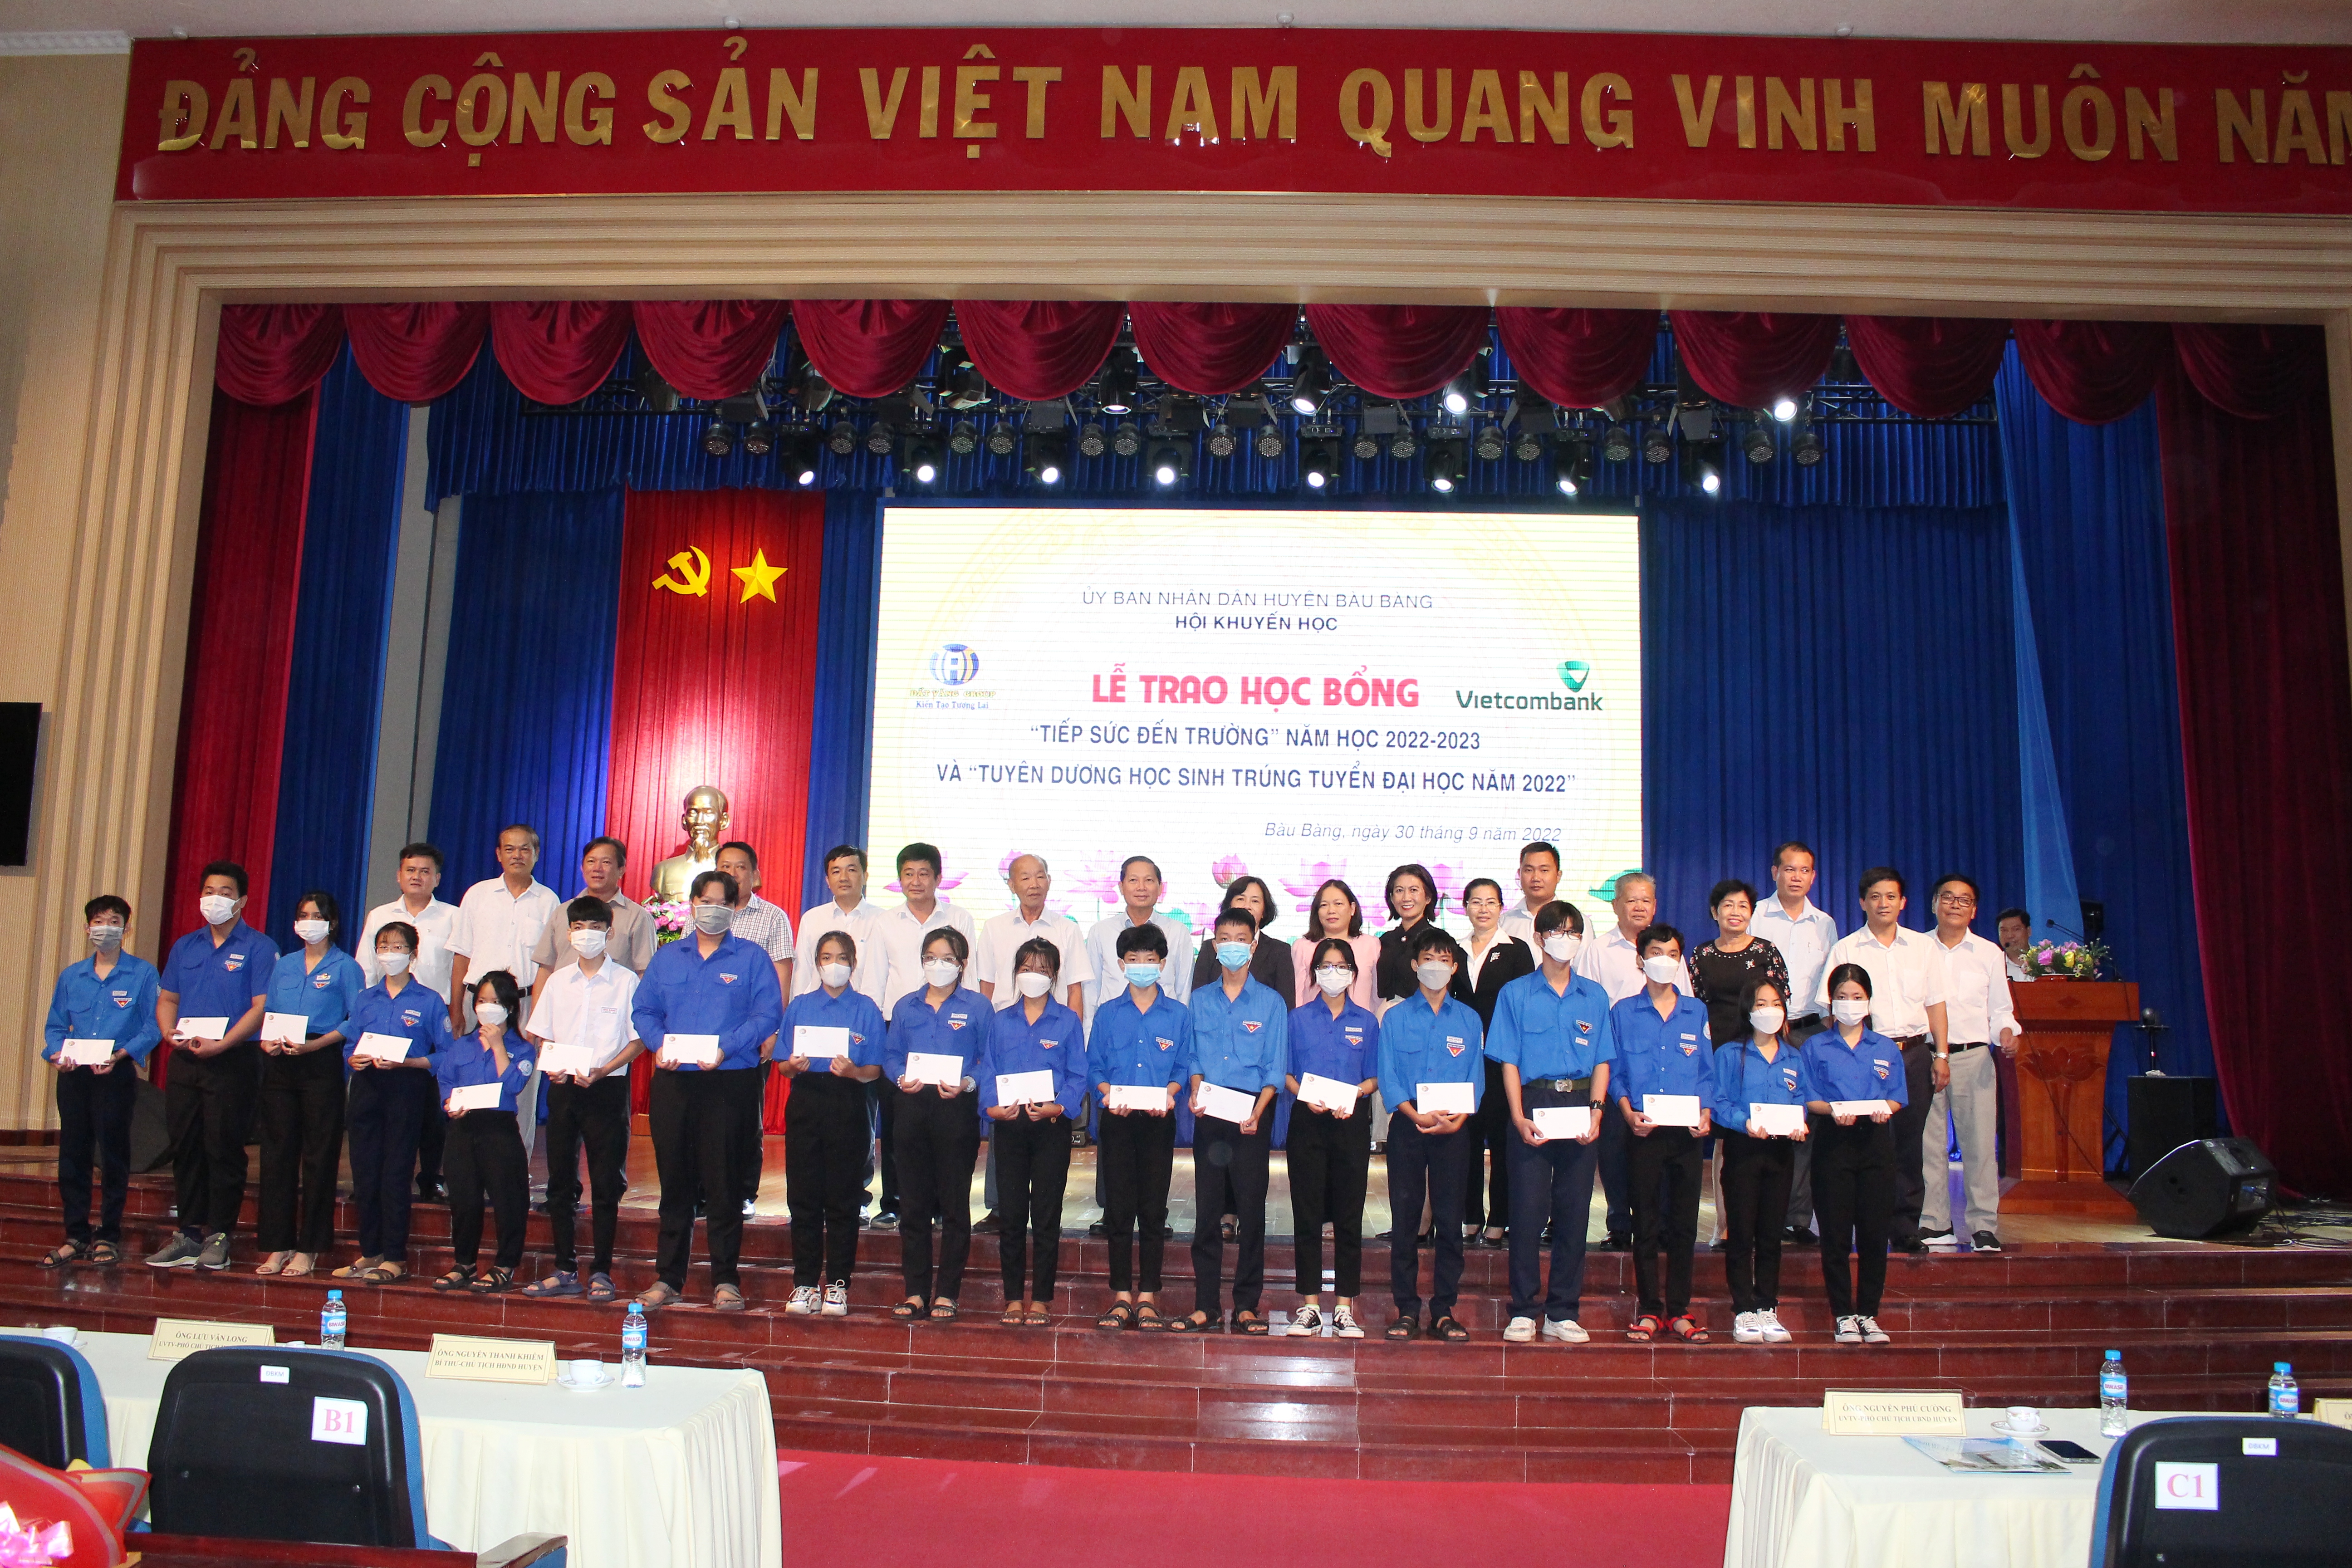 Lãnh đạo huyện chụp hình lưu niệm với các em học sinh tại lễ trao học bổng.